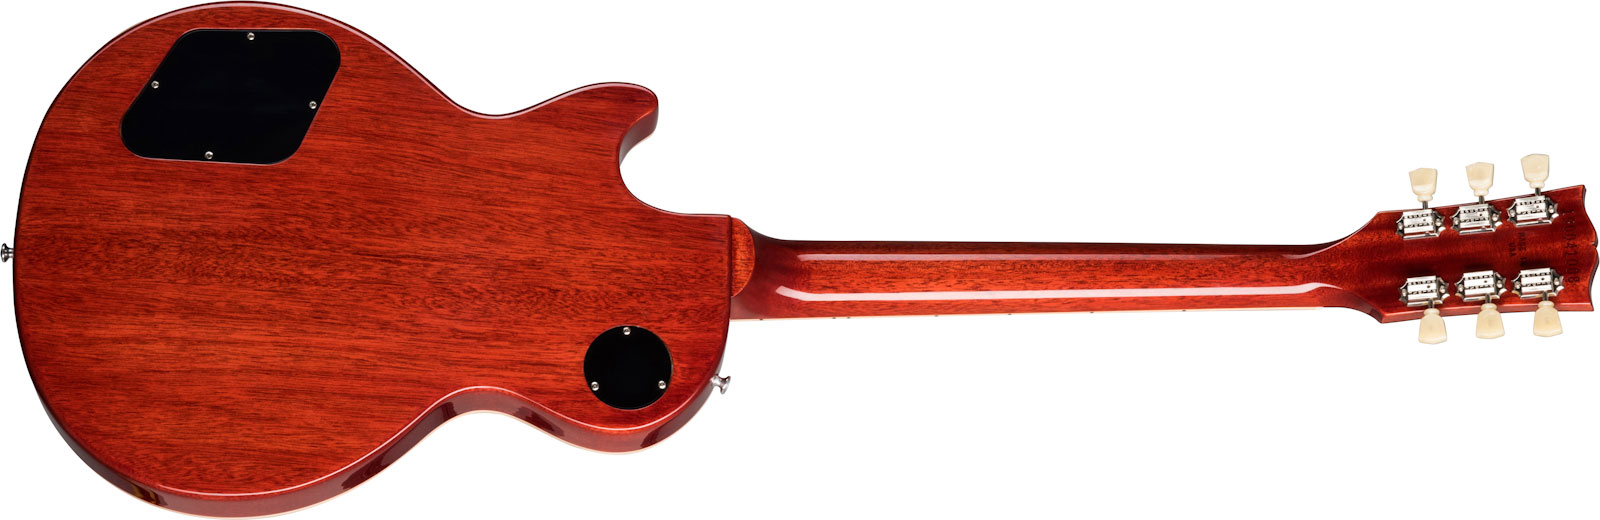 Gibson Les Paul Standard 50s 2h Ht Rw - Heritage Cherry Sunburst - Guitare Électrique Single Cut - Variation 1